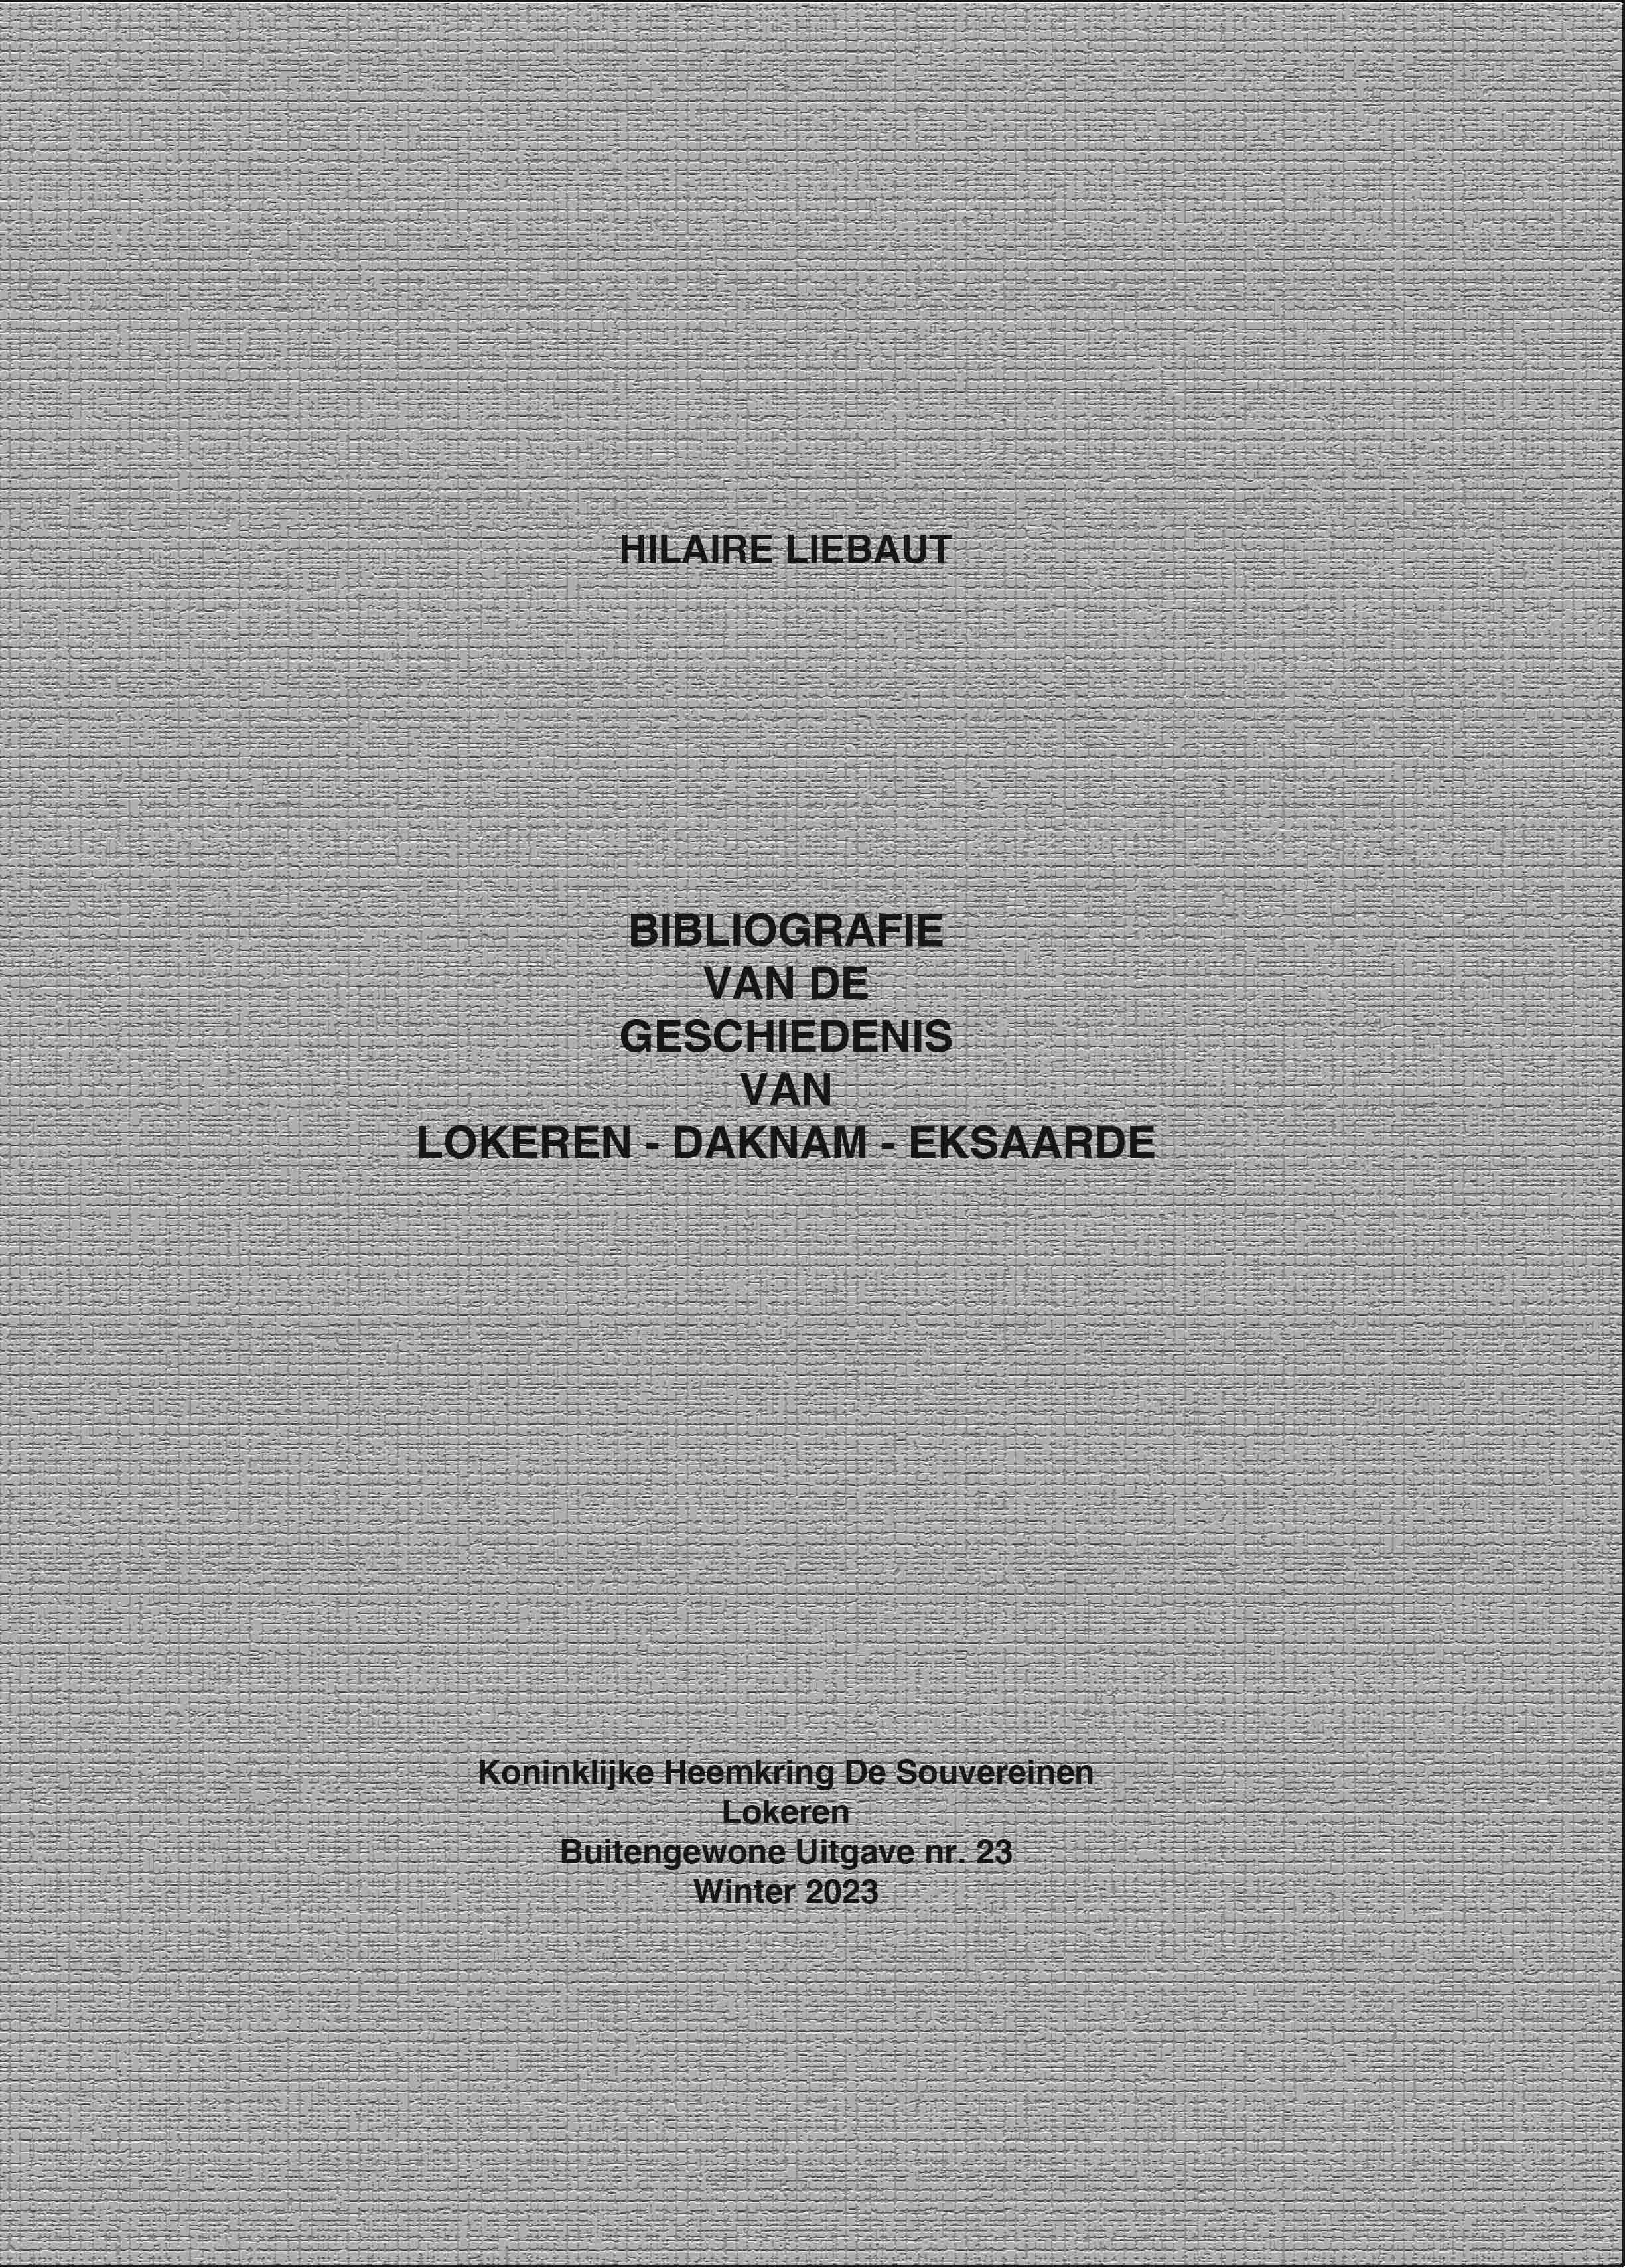 20231222 E Book Buiten Gewone Uitgave Hilaire Liebaut Bibliografie voorblad kopie